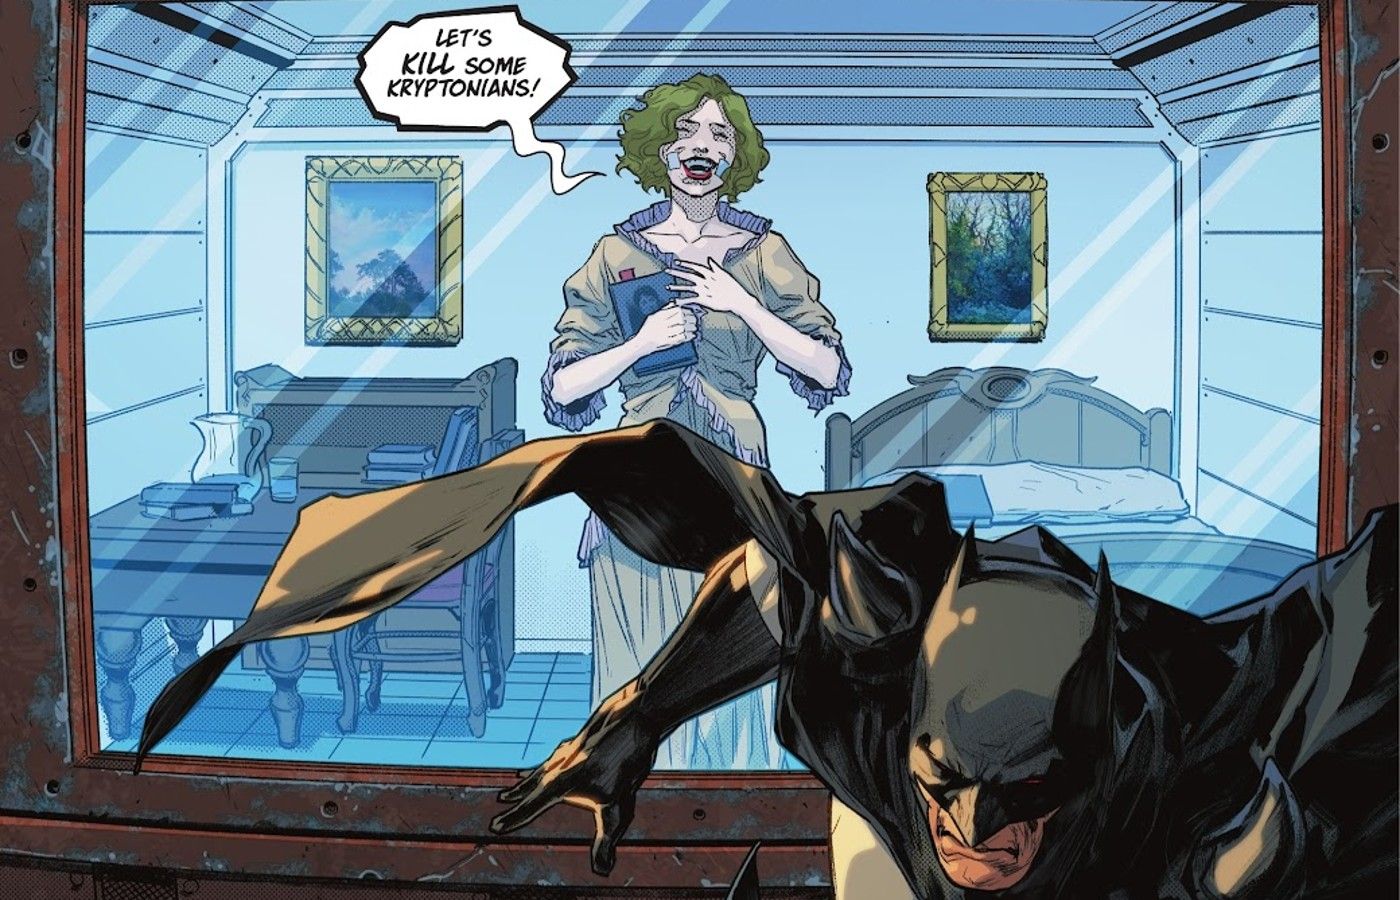 joker as batman trophy in flashpoint